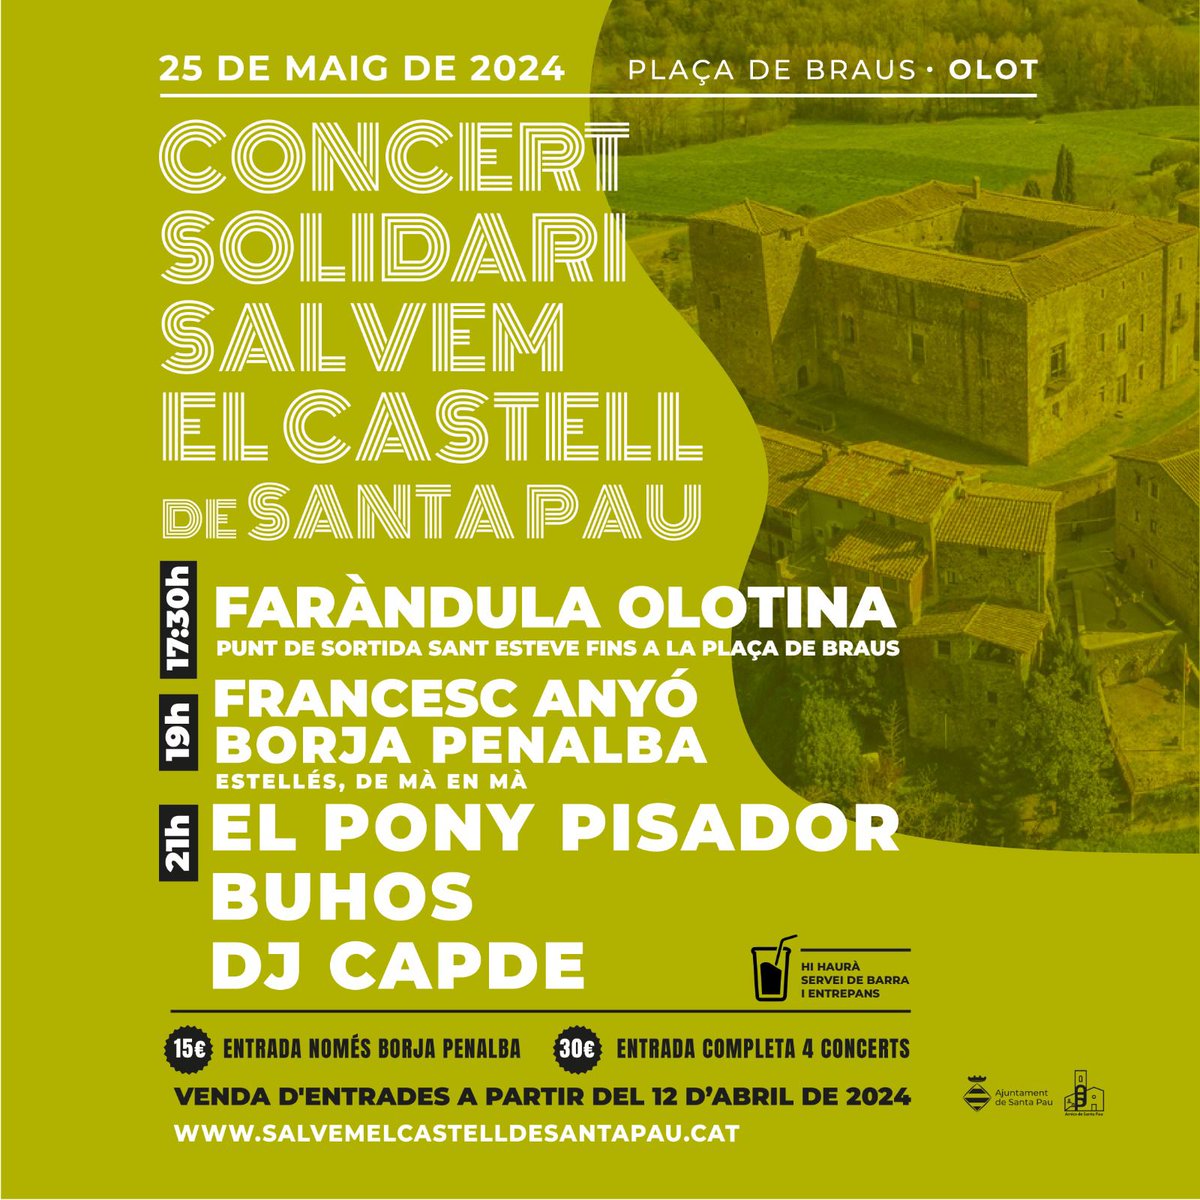 🎉El dissabte 25 de maig es prepara una de molt grossa a la plaça de Braus d'Olot 👇 CONCERT SOLIDARI SALVEM EL CASTELL DE SANTA PAU 17:30h @FarndulaOlotina 19h @BPenalba i @FrancescAnyo (espectacle Estellés, de mà en mà) 21h @elponypisador @buhosoficial i @djcapde